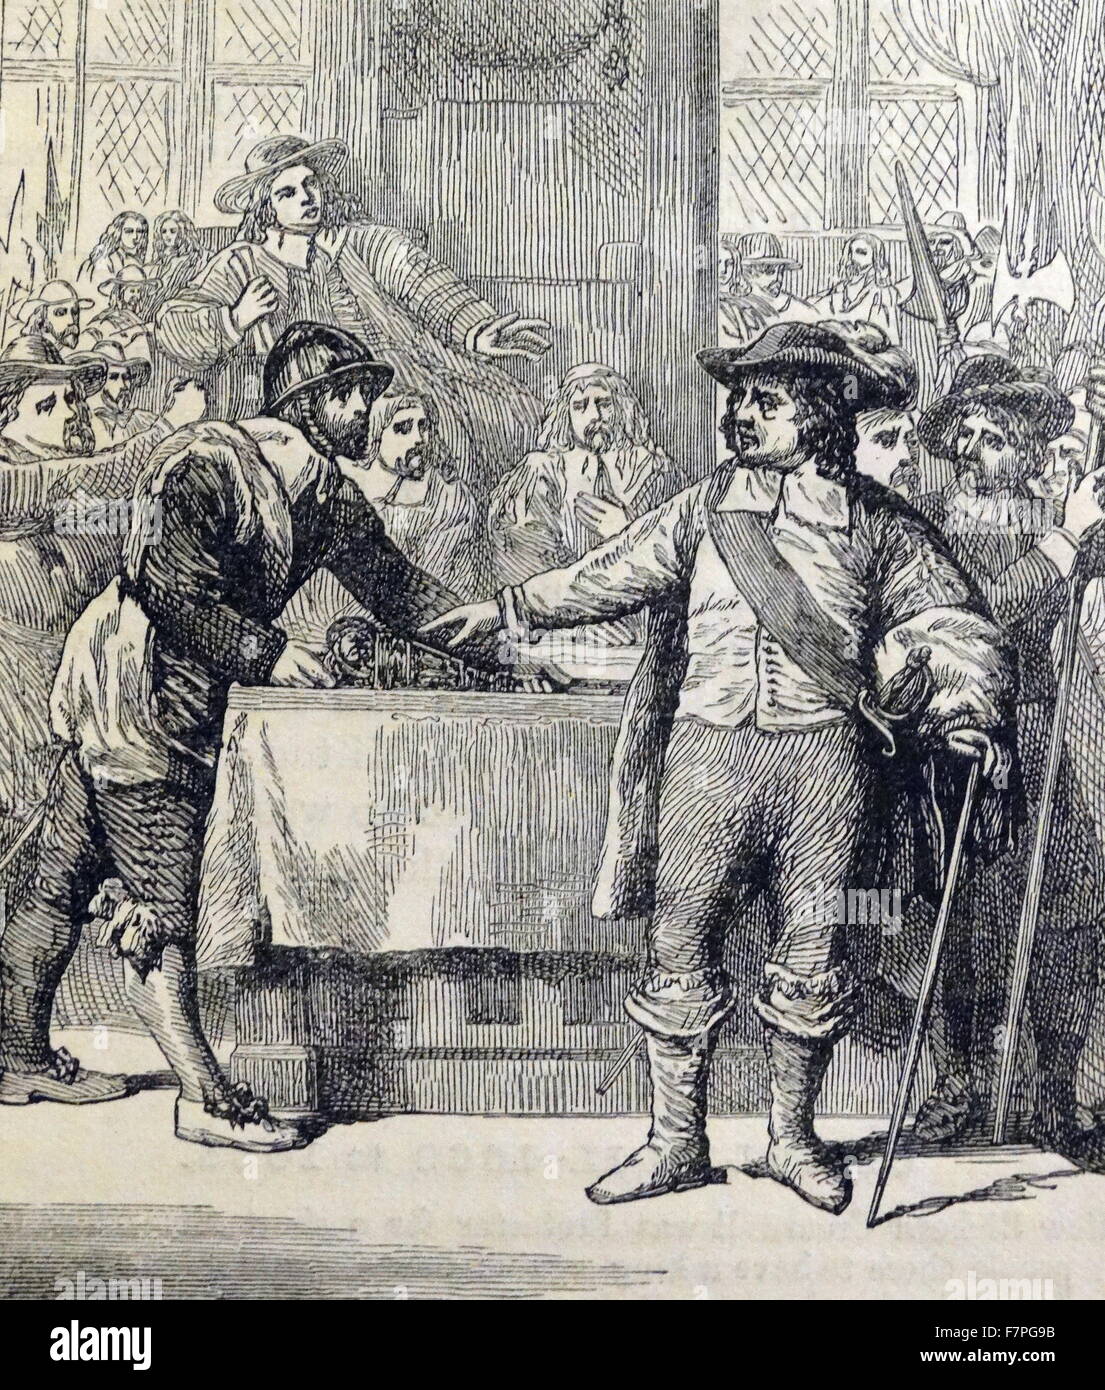 Oliver Cromwell (1599 – 1658) wies der Bürzel Parlament von England am 20. April 1653, mit Gewalt. Cromwell war englischer militärischer und politischer Führer und späteren Lord Protector des Commonwealth of England, Schottland und Irland. Stockfoto